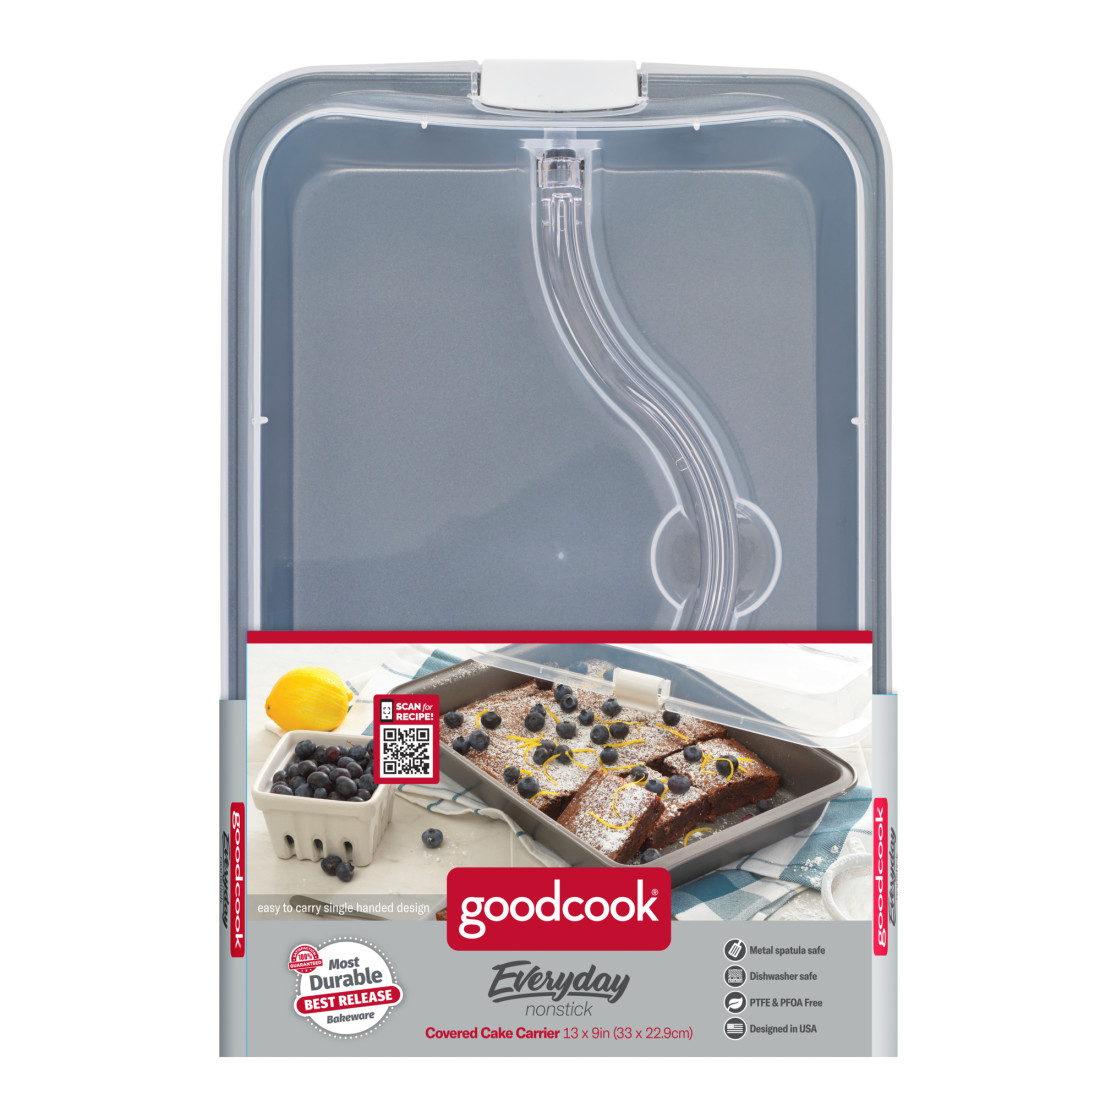 Goodcook 4020 Baking Sheet, 13 Inch x 9 Inch,Grey